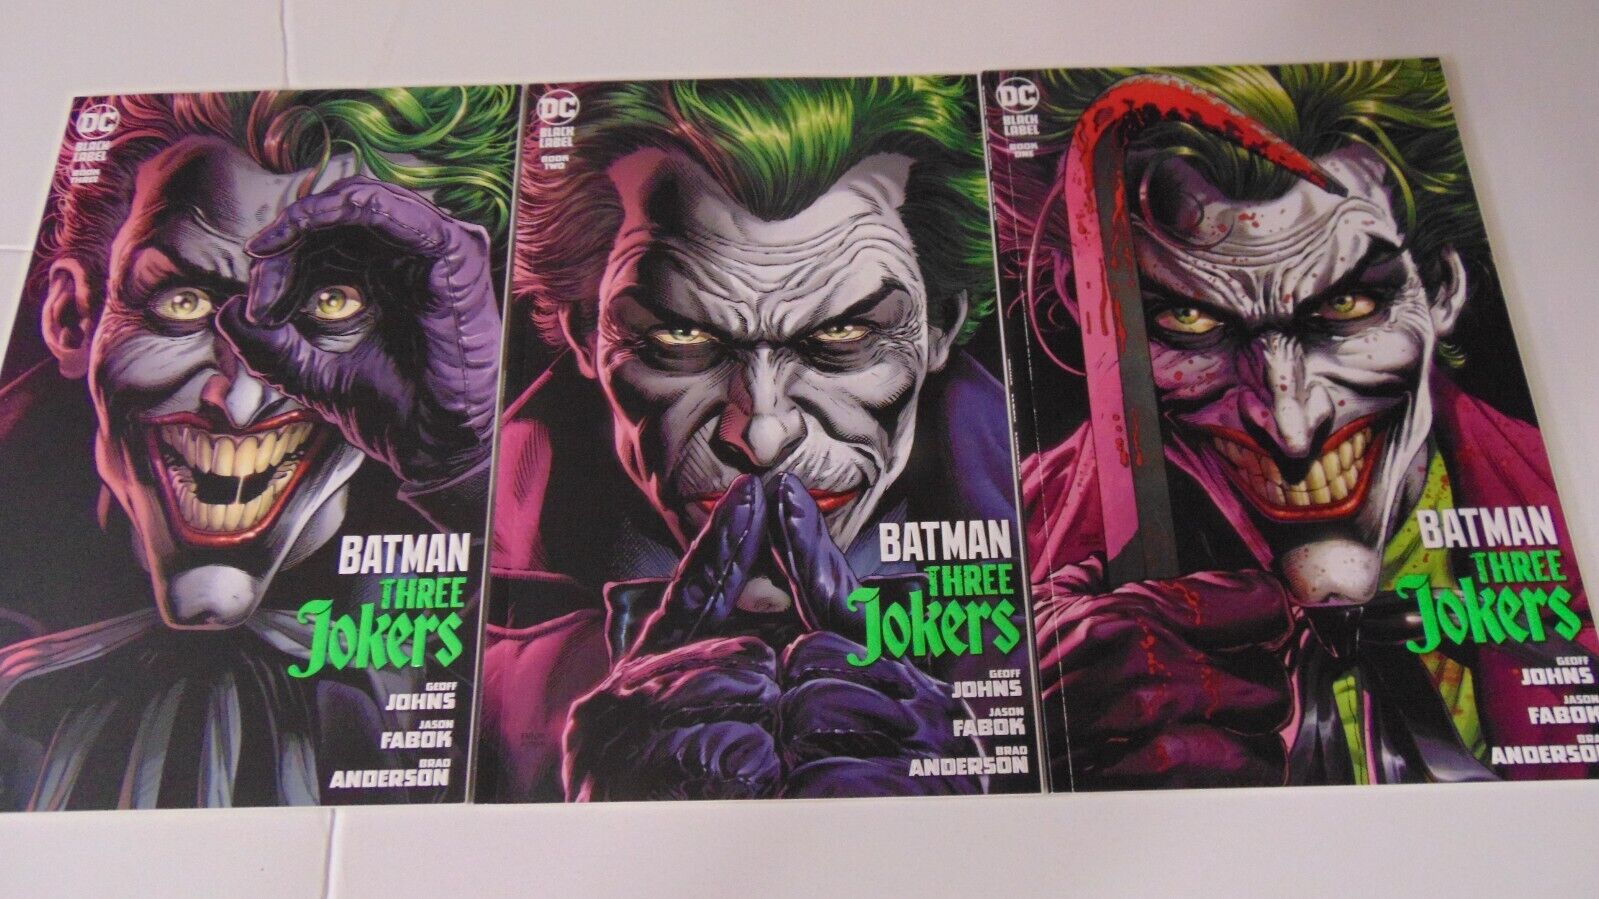 Batman Three Jokers #1 2 3 SET RUN (2020) JOHNS FABOK ART GREAT STORY